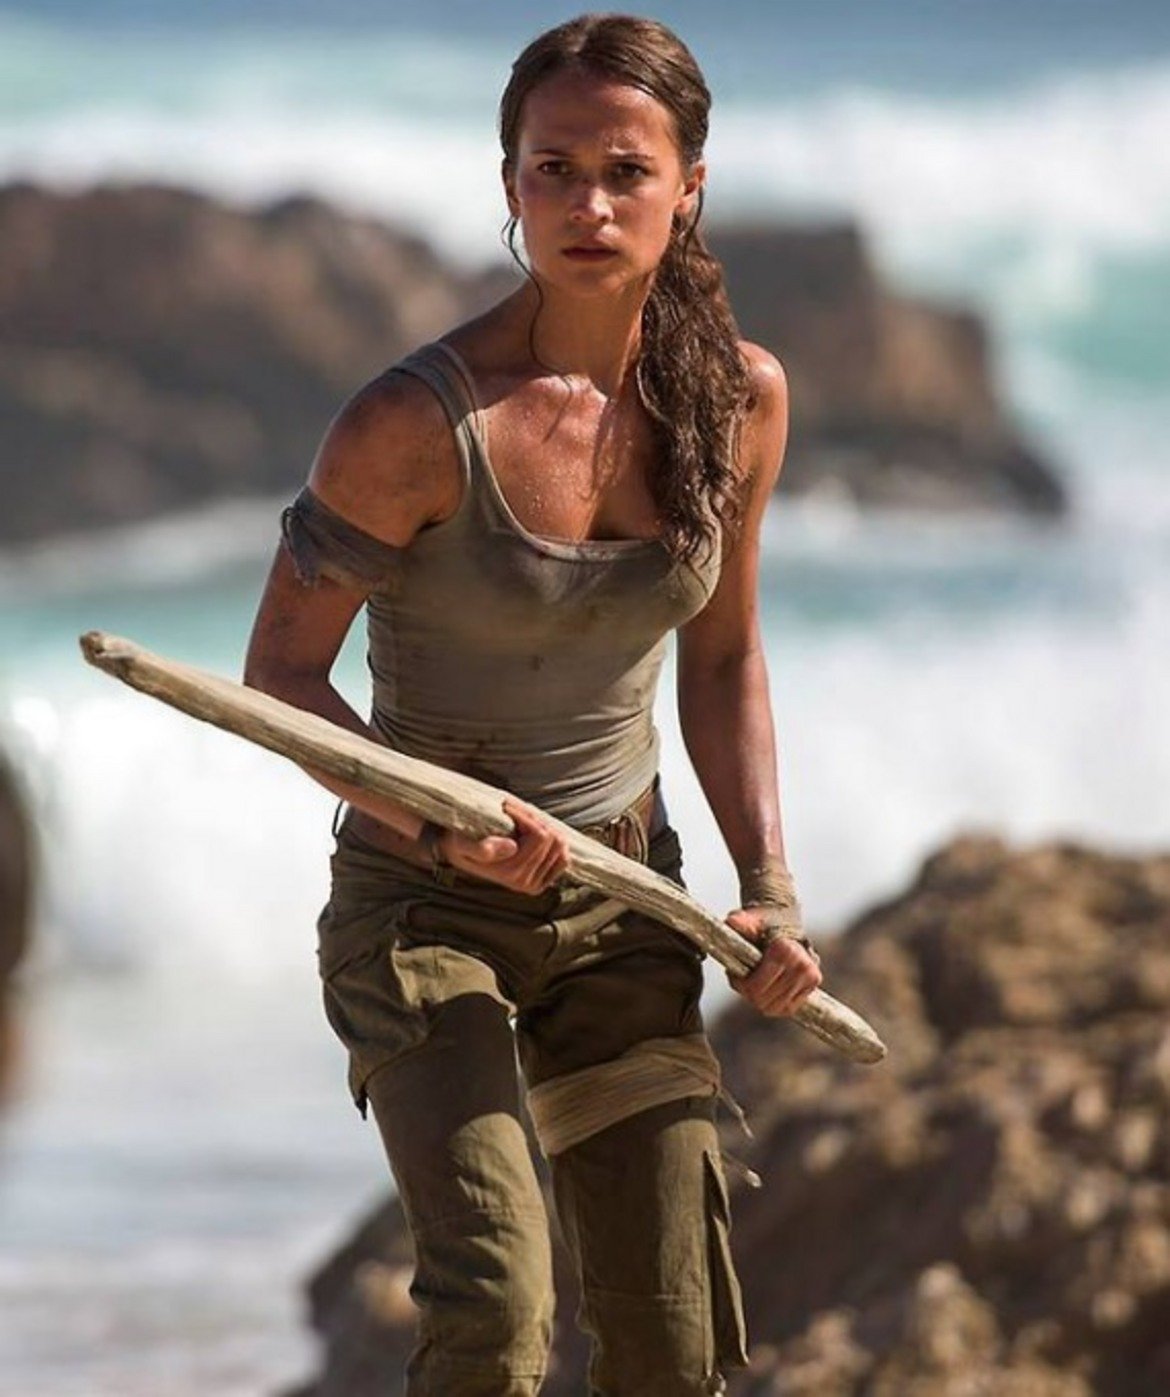 Tomb Raider

Тази пролет за втори път легендарната за гейминга героиня Лара Крофт ще бъде изиграна от актриса, спечелила "Оскар" за поддържаща женска роля. През 2001 г., малко след като взе статуетката за "Луди години" (Girl, Interrupted), Анджелина Джоли влезе в ролята на смелата авантюристка. Днес тази чест се пада на Алисия Викандер, която бе отличена за "Момичето от Дания".

Новият Tomb Raider ще разкаже историята на младата Лара, която разследва изчезването на своя баща. То ще я отведе до последното място, където старият професор е видян - гробница на самотен остров край бреговете на Япония.

Tomb Raider ще дебютира още на 16 март 2018 г.
